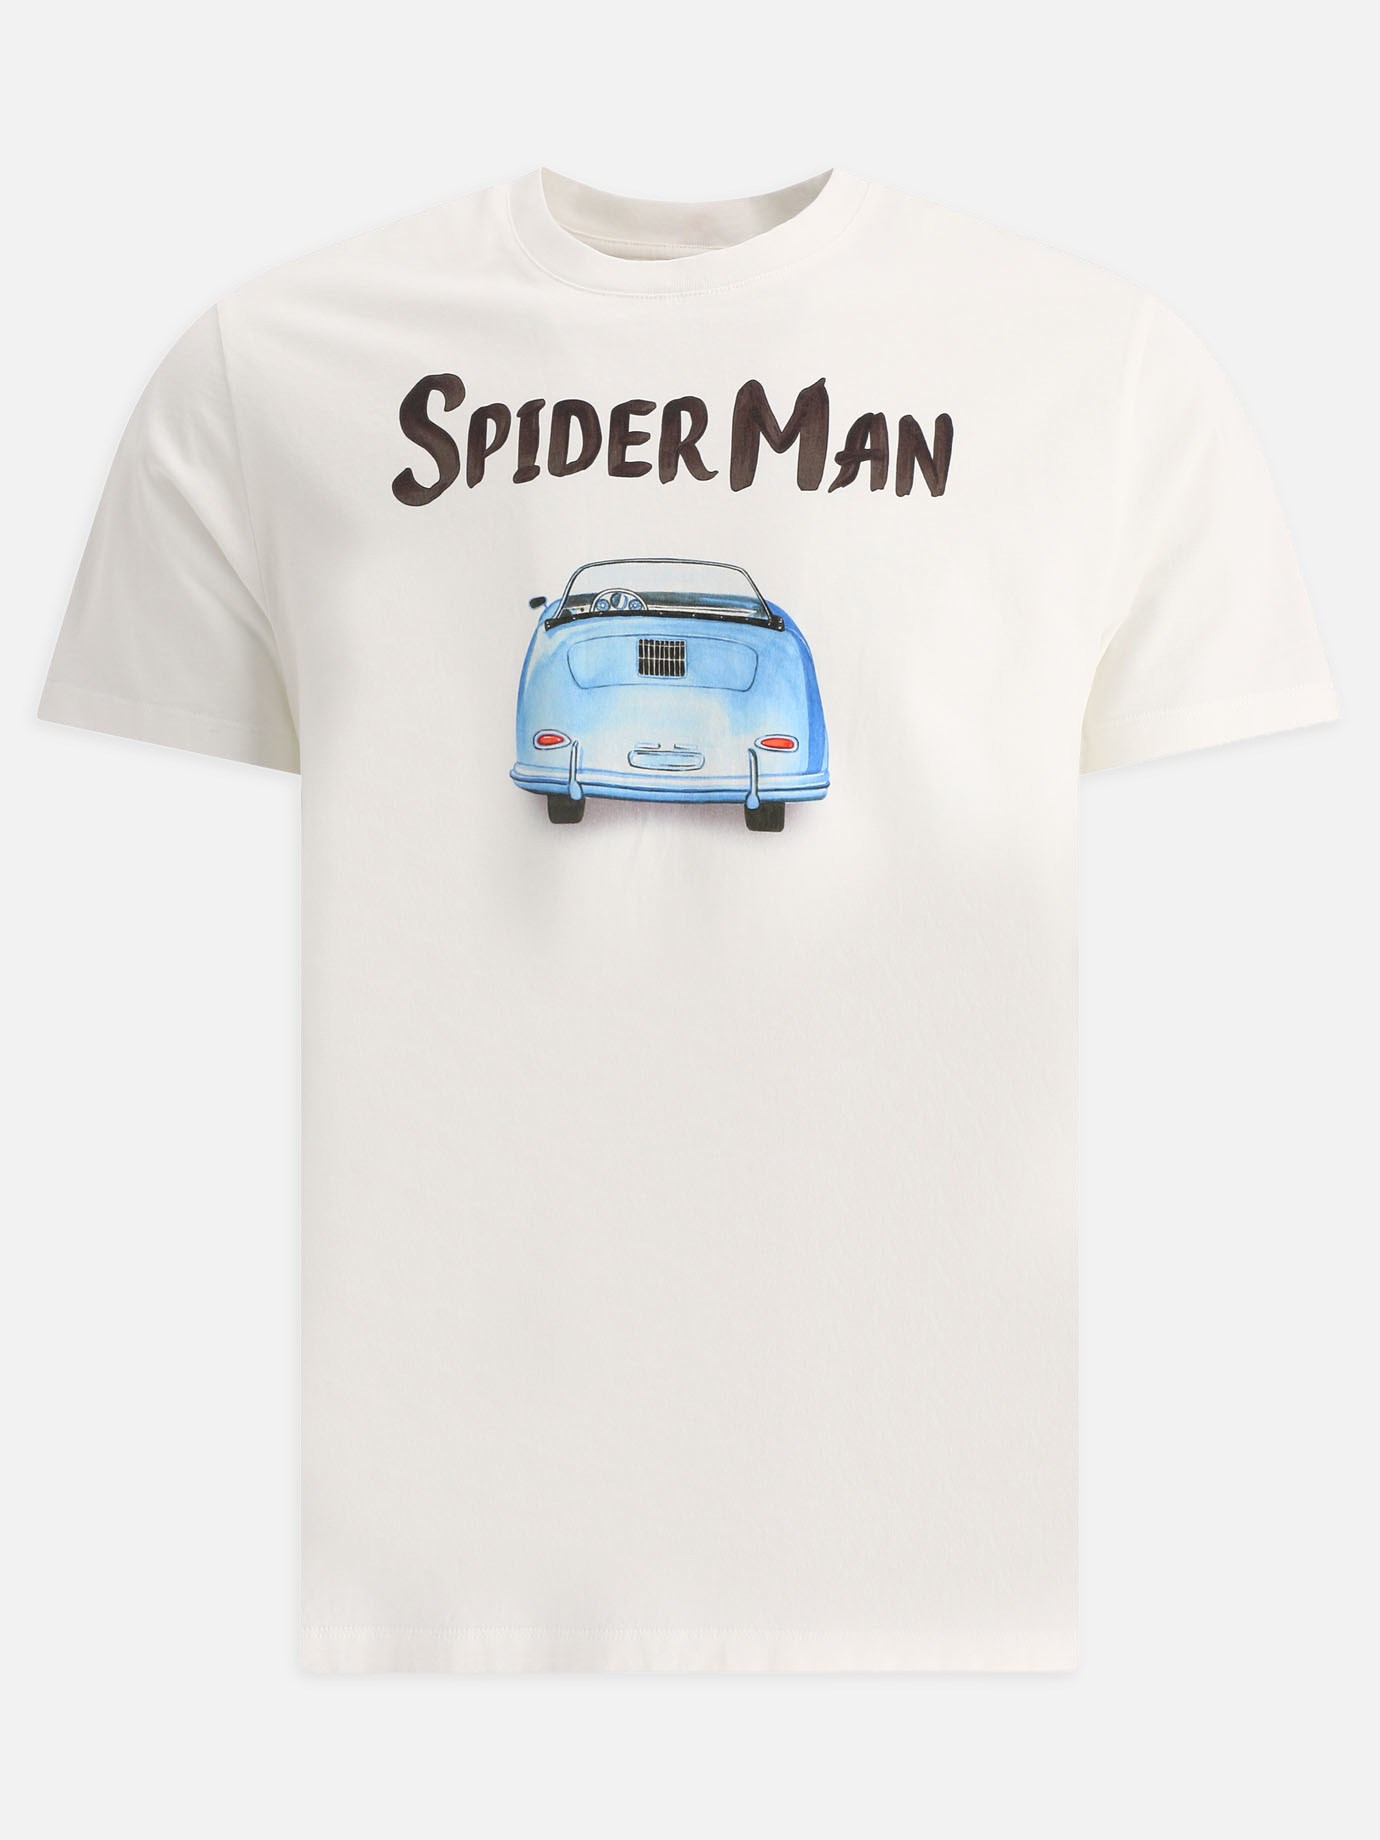  Spider Man  t-shirtby MC2 Saint Barth - 5